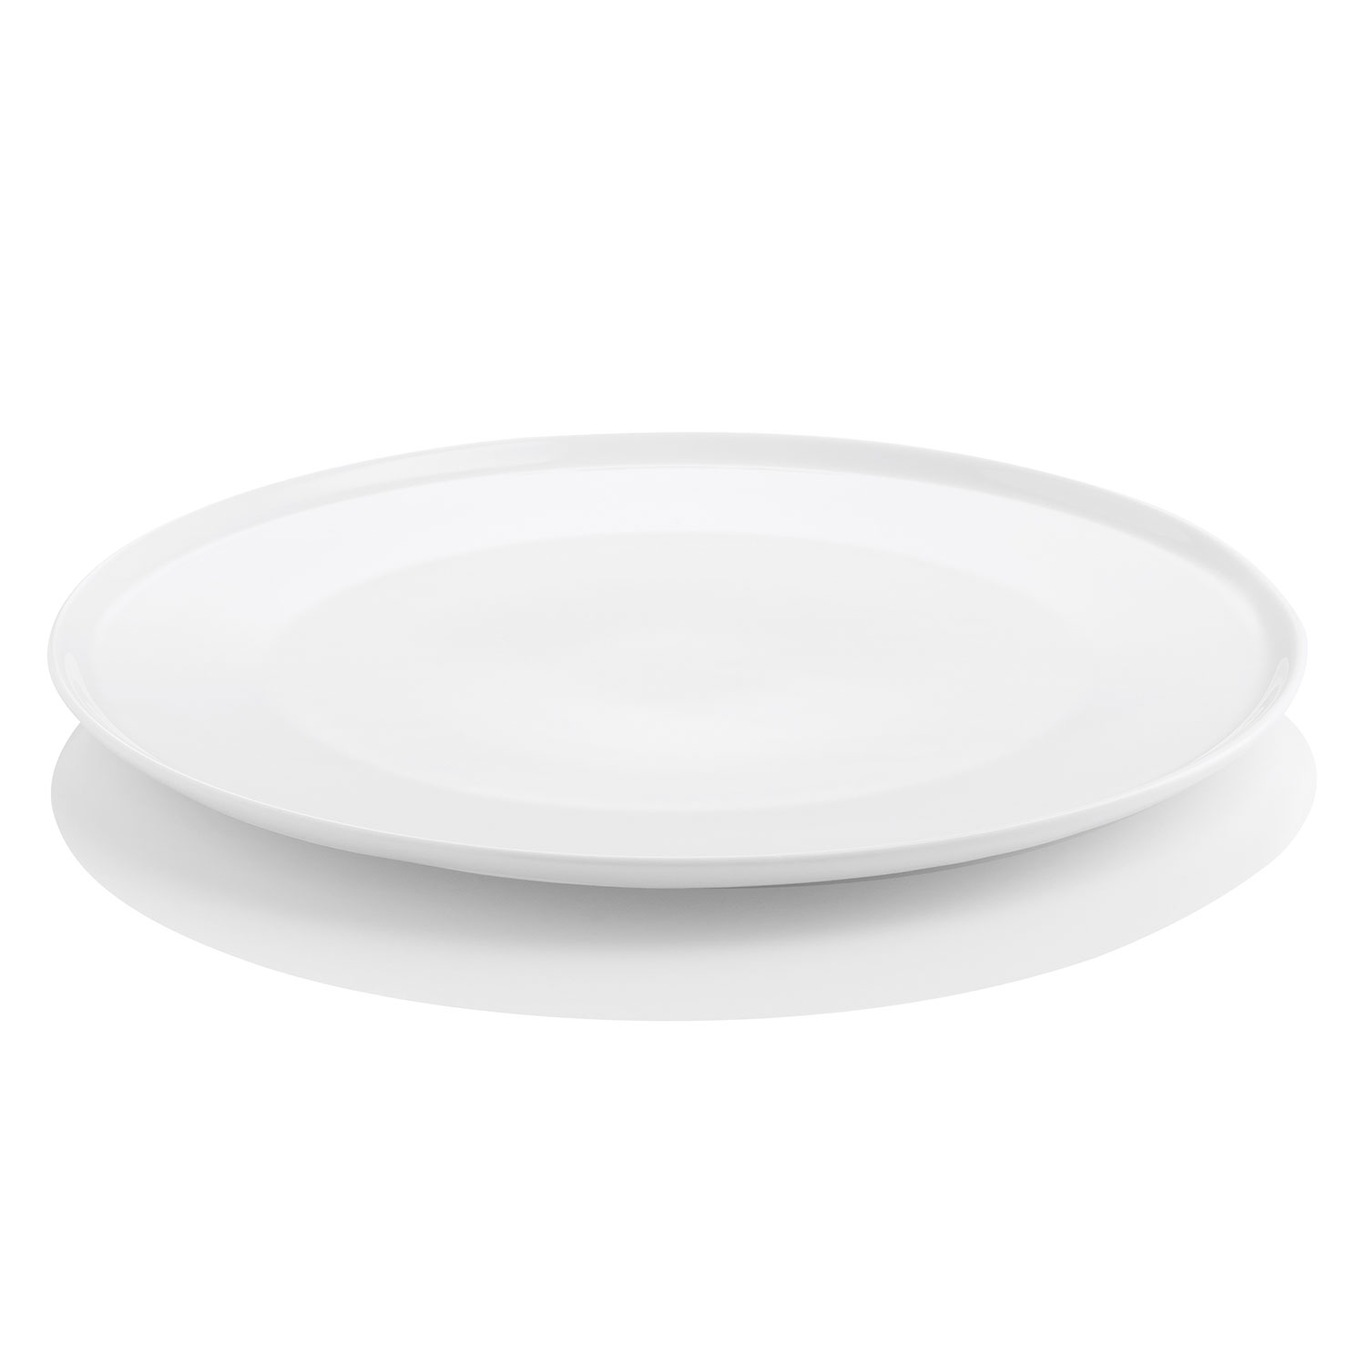 Enso Dinner Plate 26 cm, White